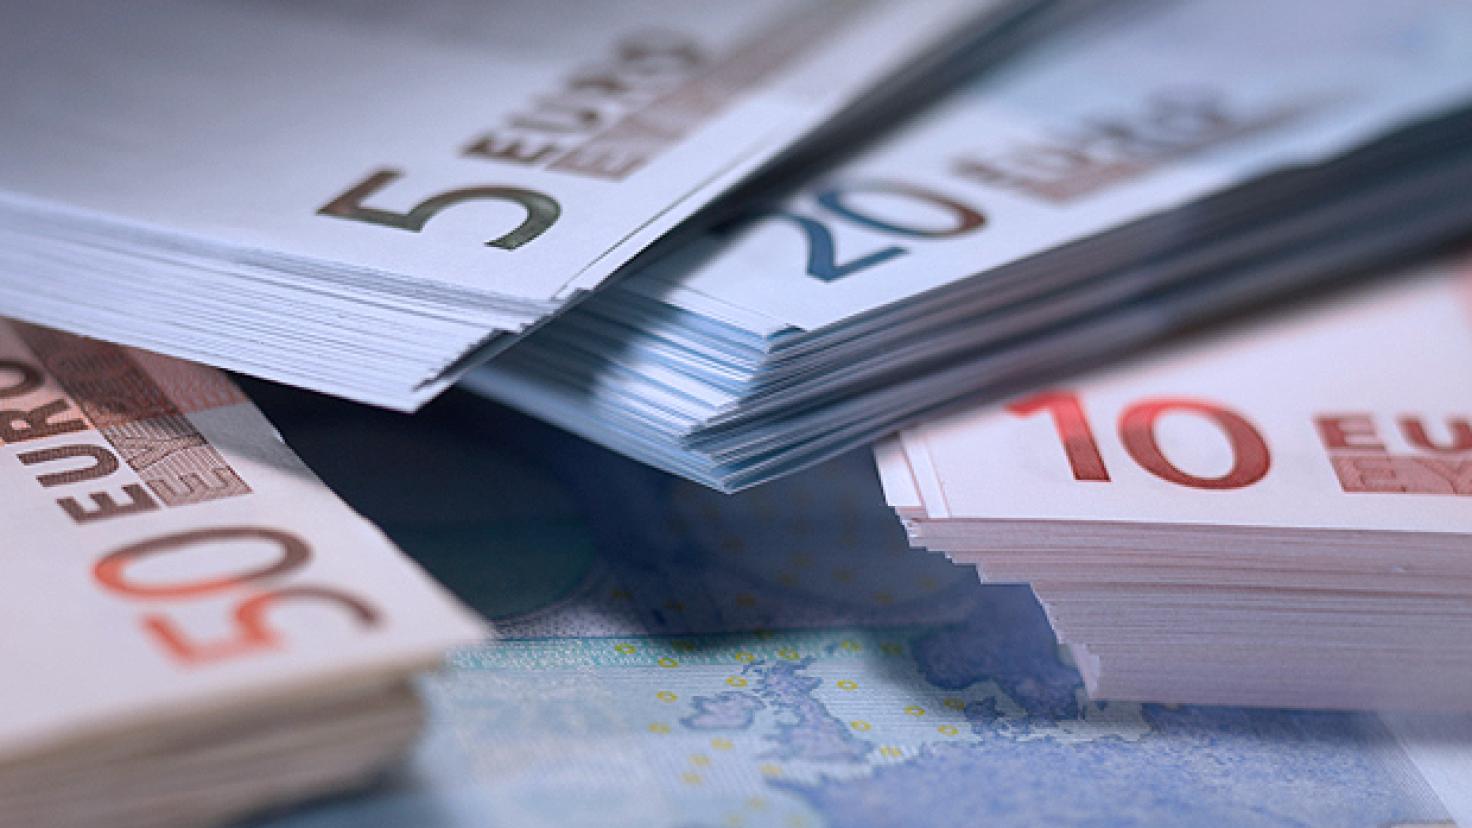 Moneda en euros: Montones de billetes de 5, 10, 20 y 50 euros apilados [nid:30050].